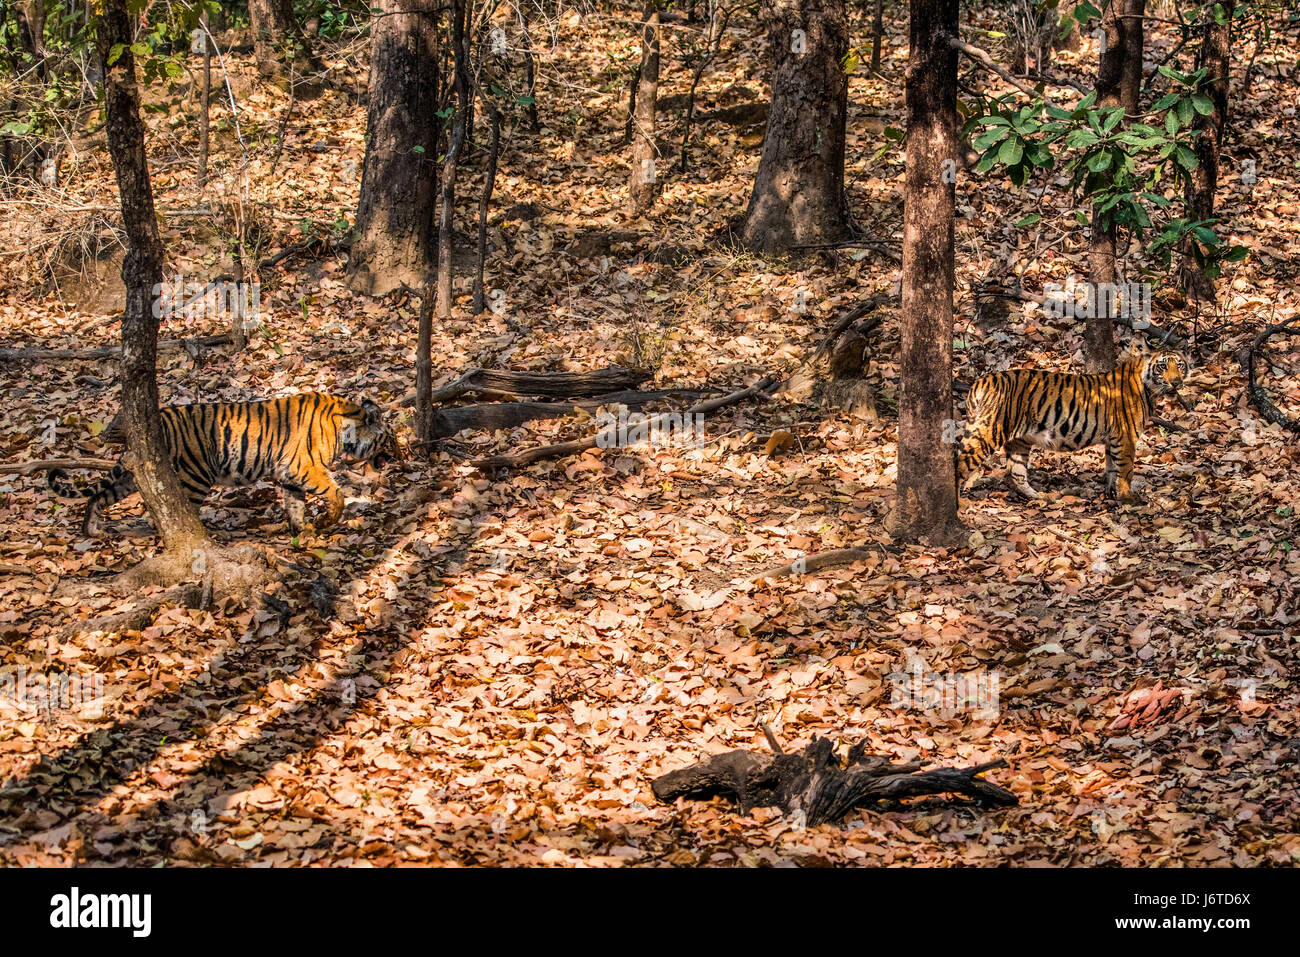 Tiger cubs Bandhavgarh Stock Photo